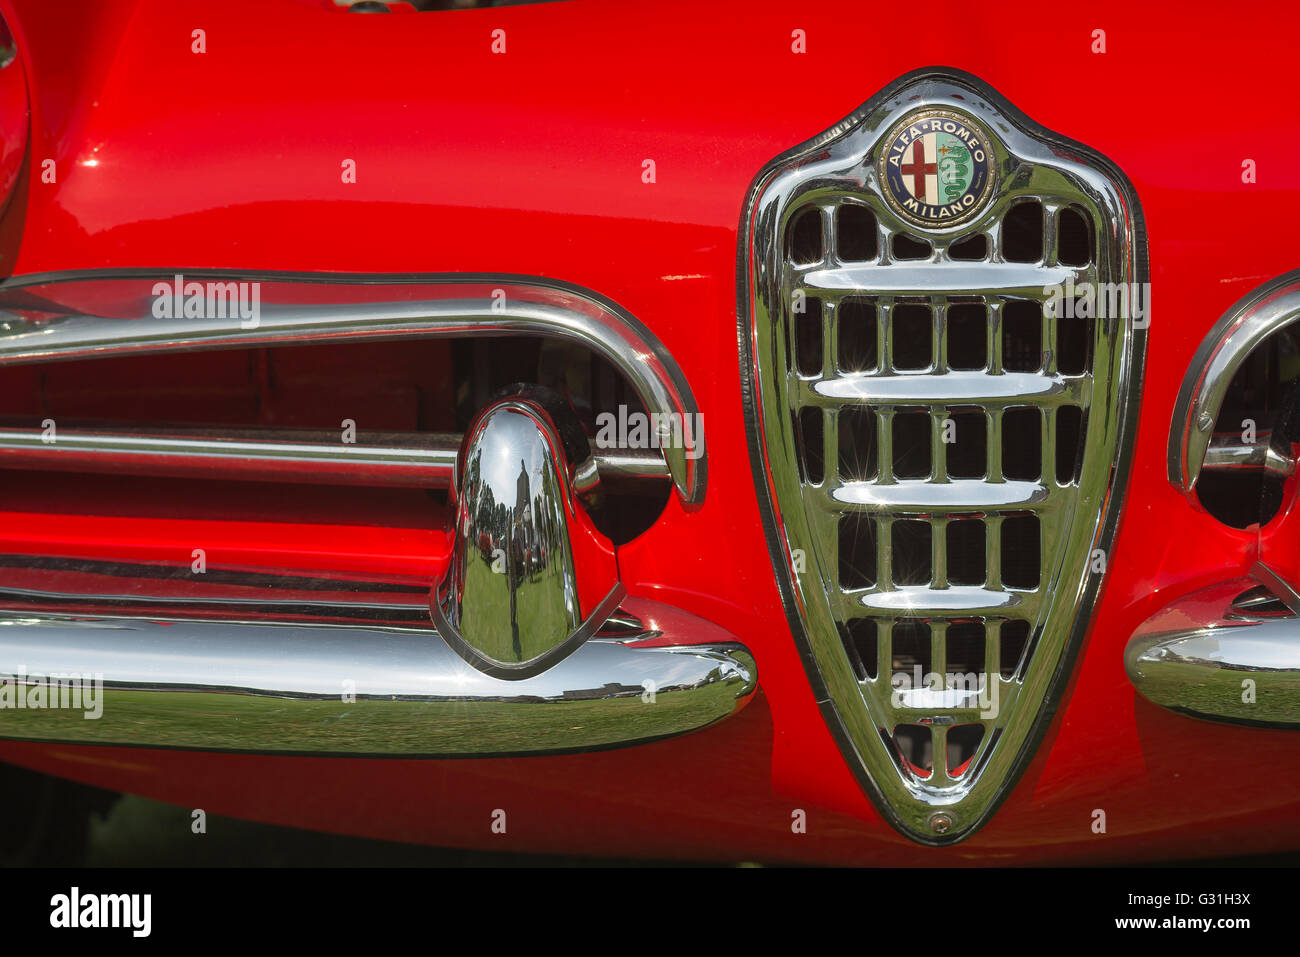 Détail de la carrosserie chrome sur un rouge lumineux 1960 Alfa Romeo Giulietta Spider Veloce voiture de sport. Banque D'Images